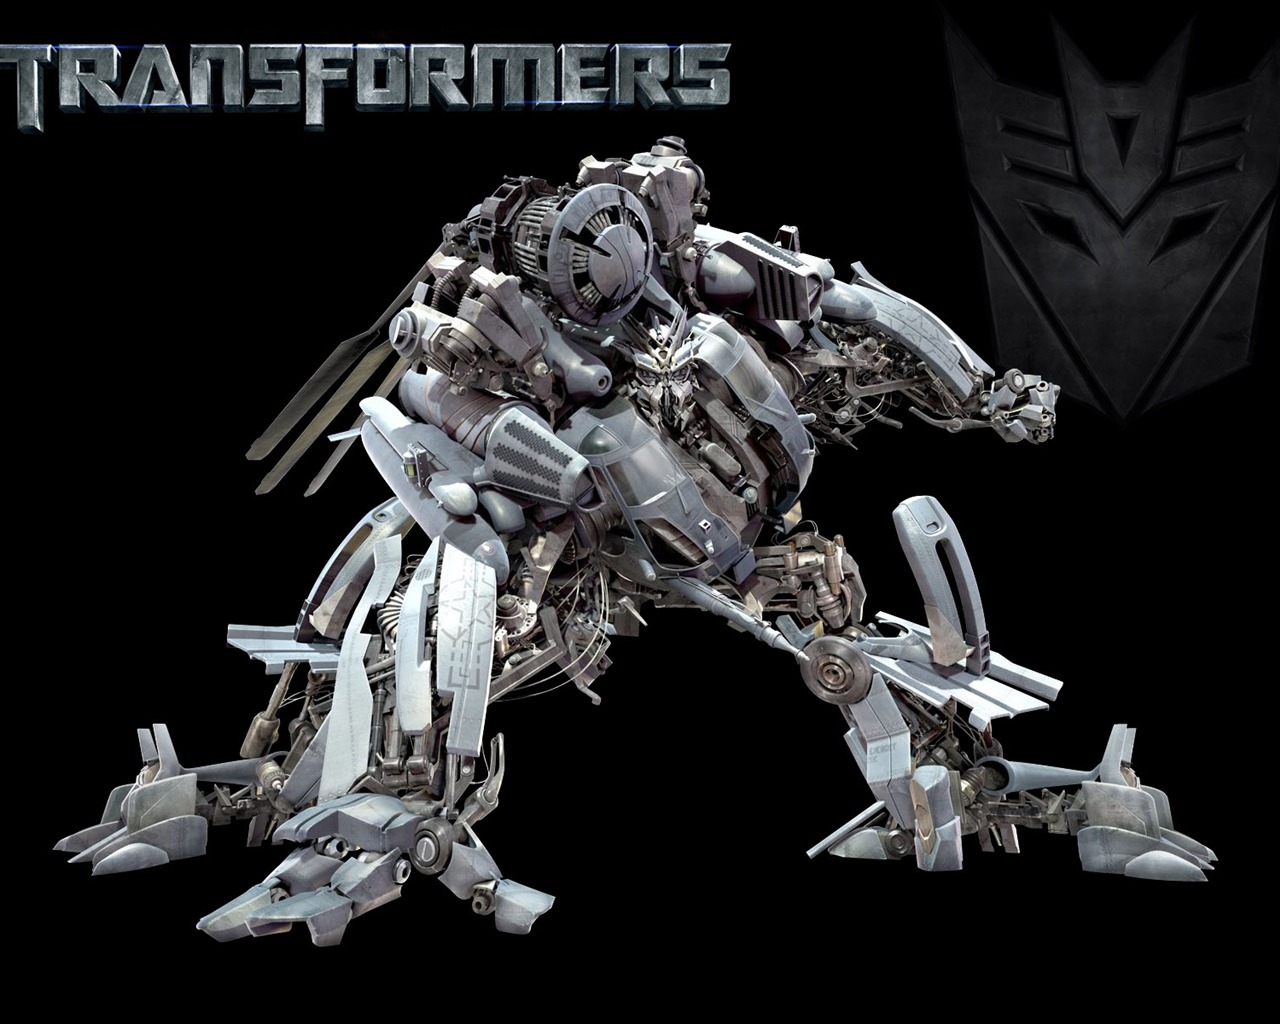 Fond d'écran Transformers (1) #9 - 1280x1024